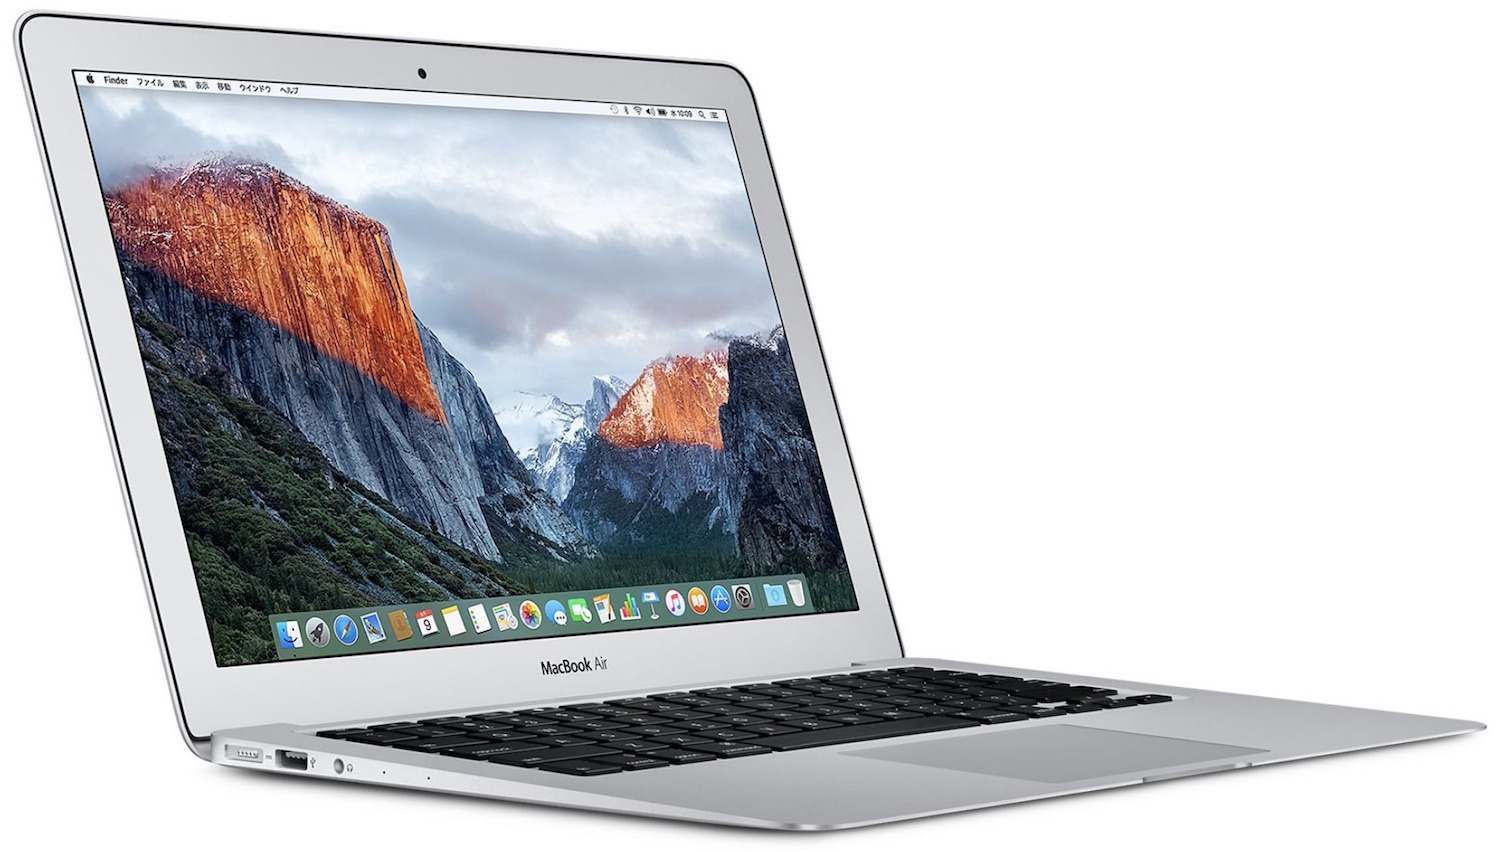 2018年後半に「MacBook」13インチモデルが新登場か | CoRRiENTE.top